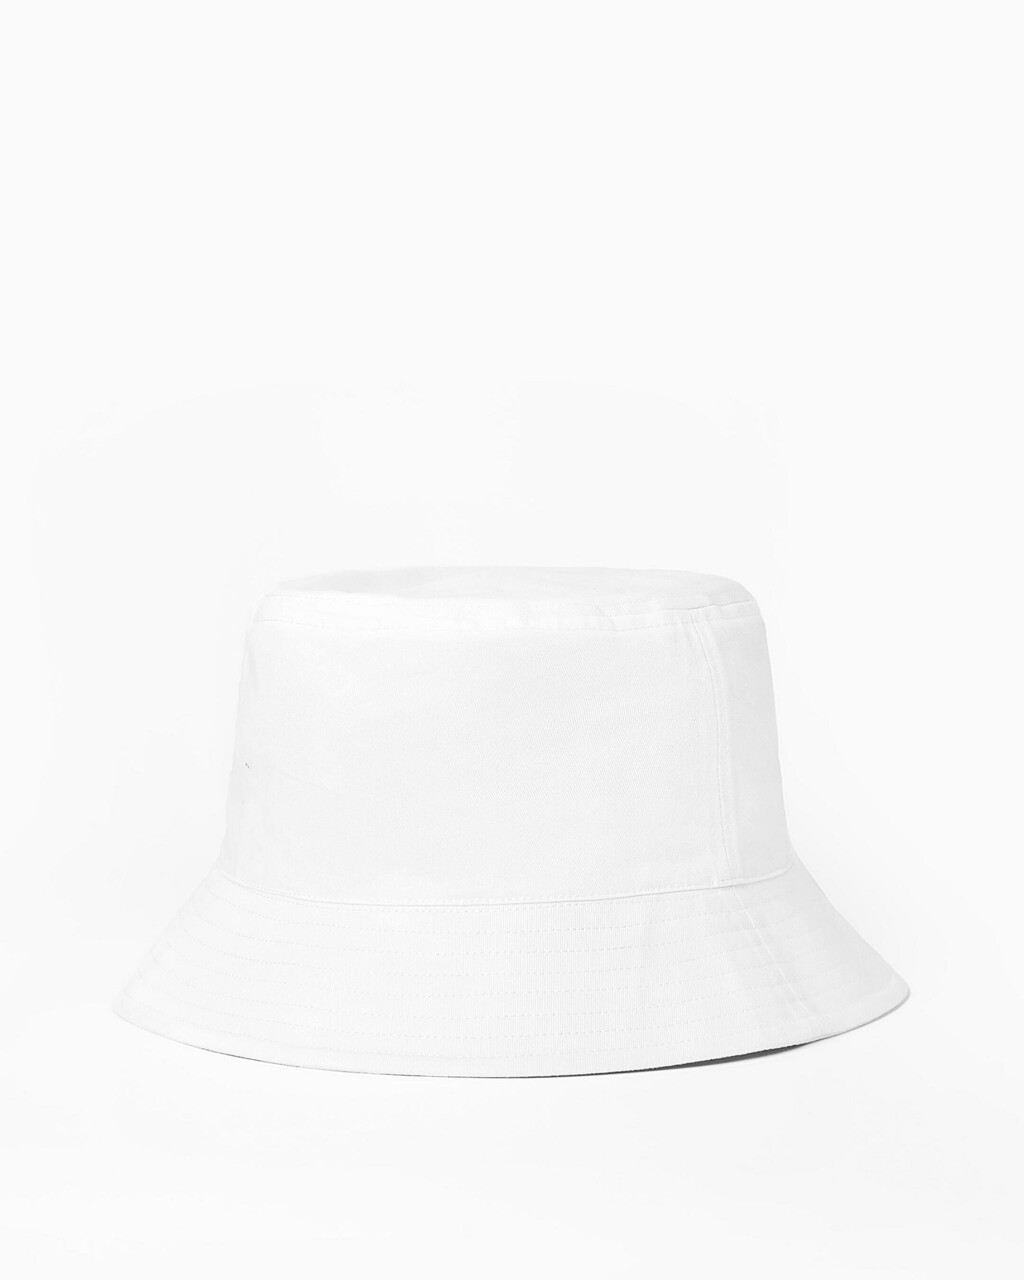 MONOGRAM 標誌漁夫帽, BRIGHT WHITE, hi-res